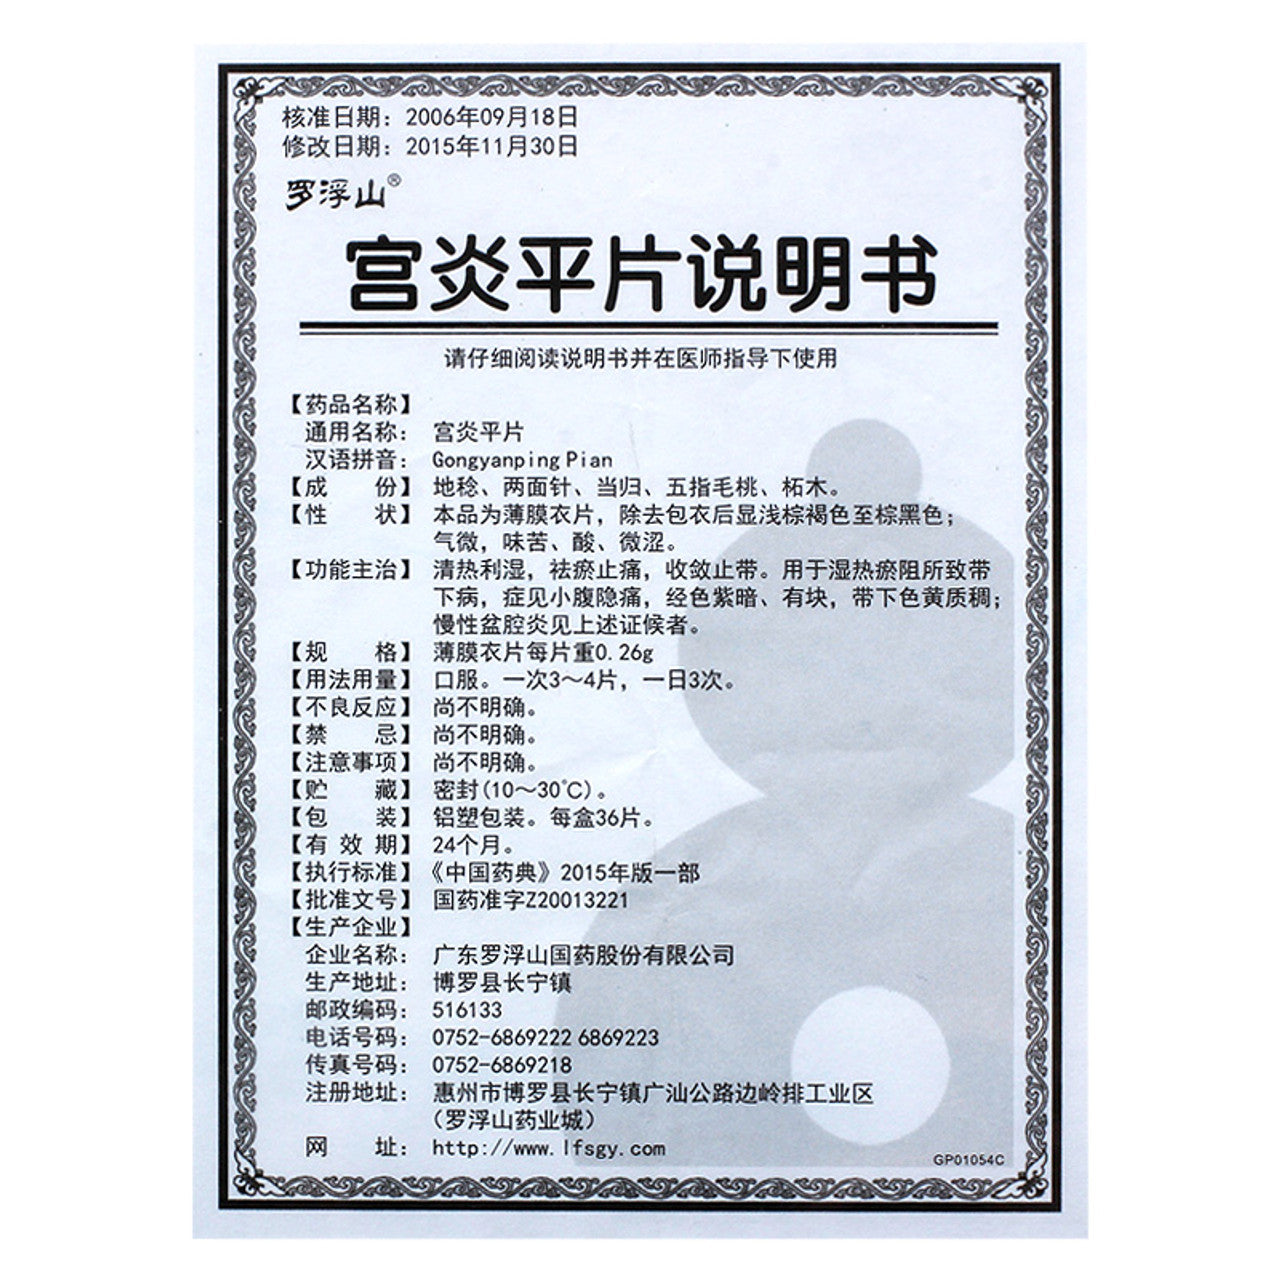 China Herb. Gongyanping Tablets or Gongyanping Pian for chronic pelvic inflammation. Gong Yan Ping Pian